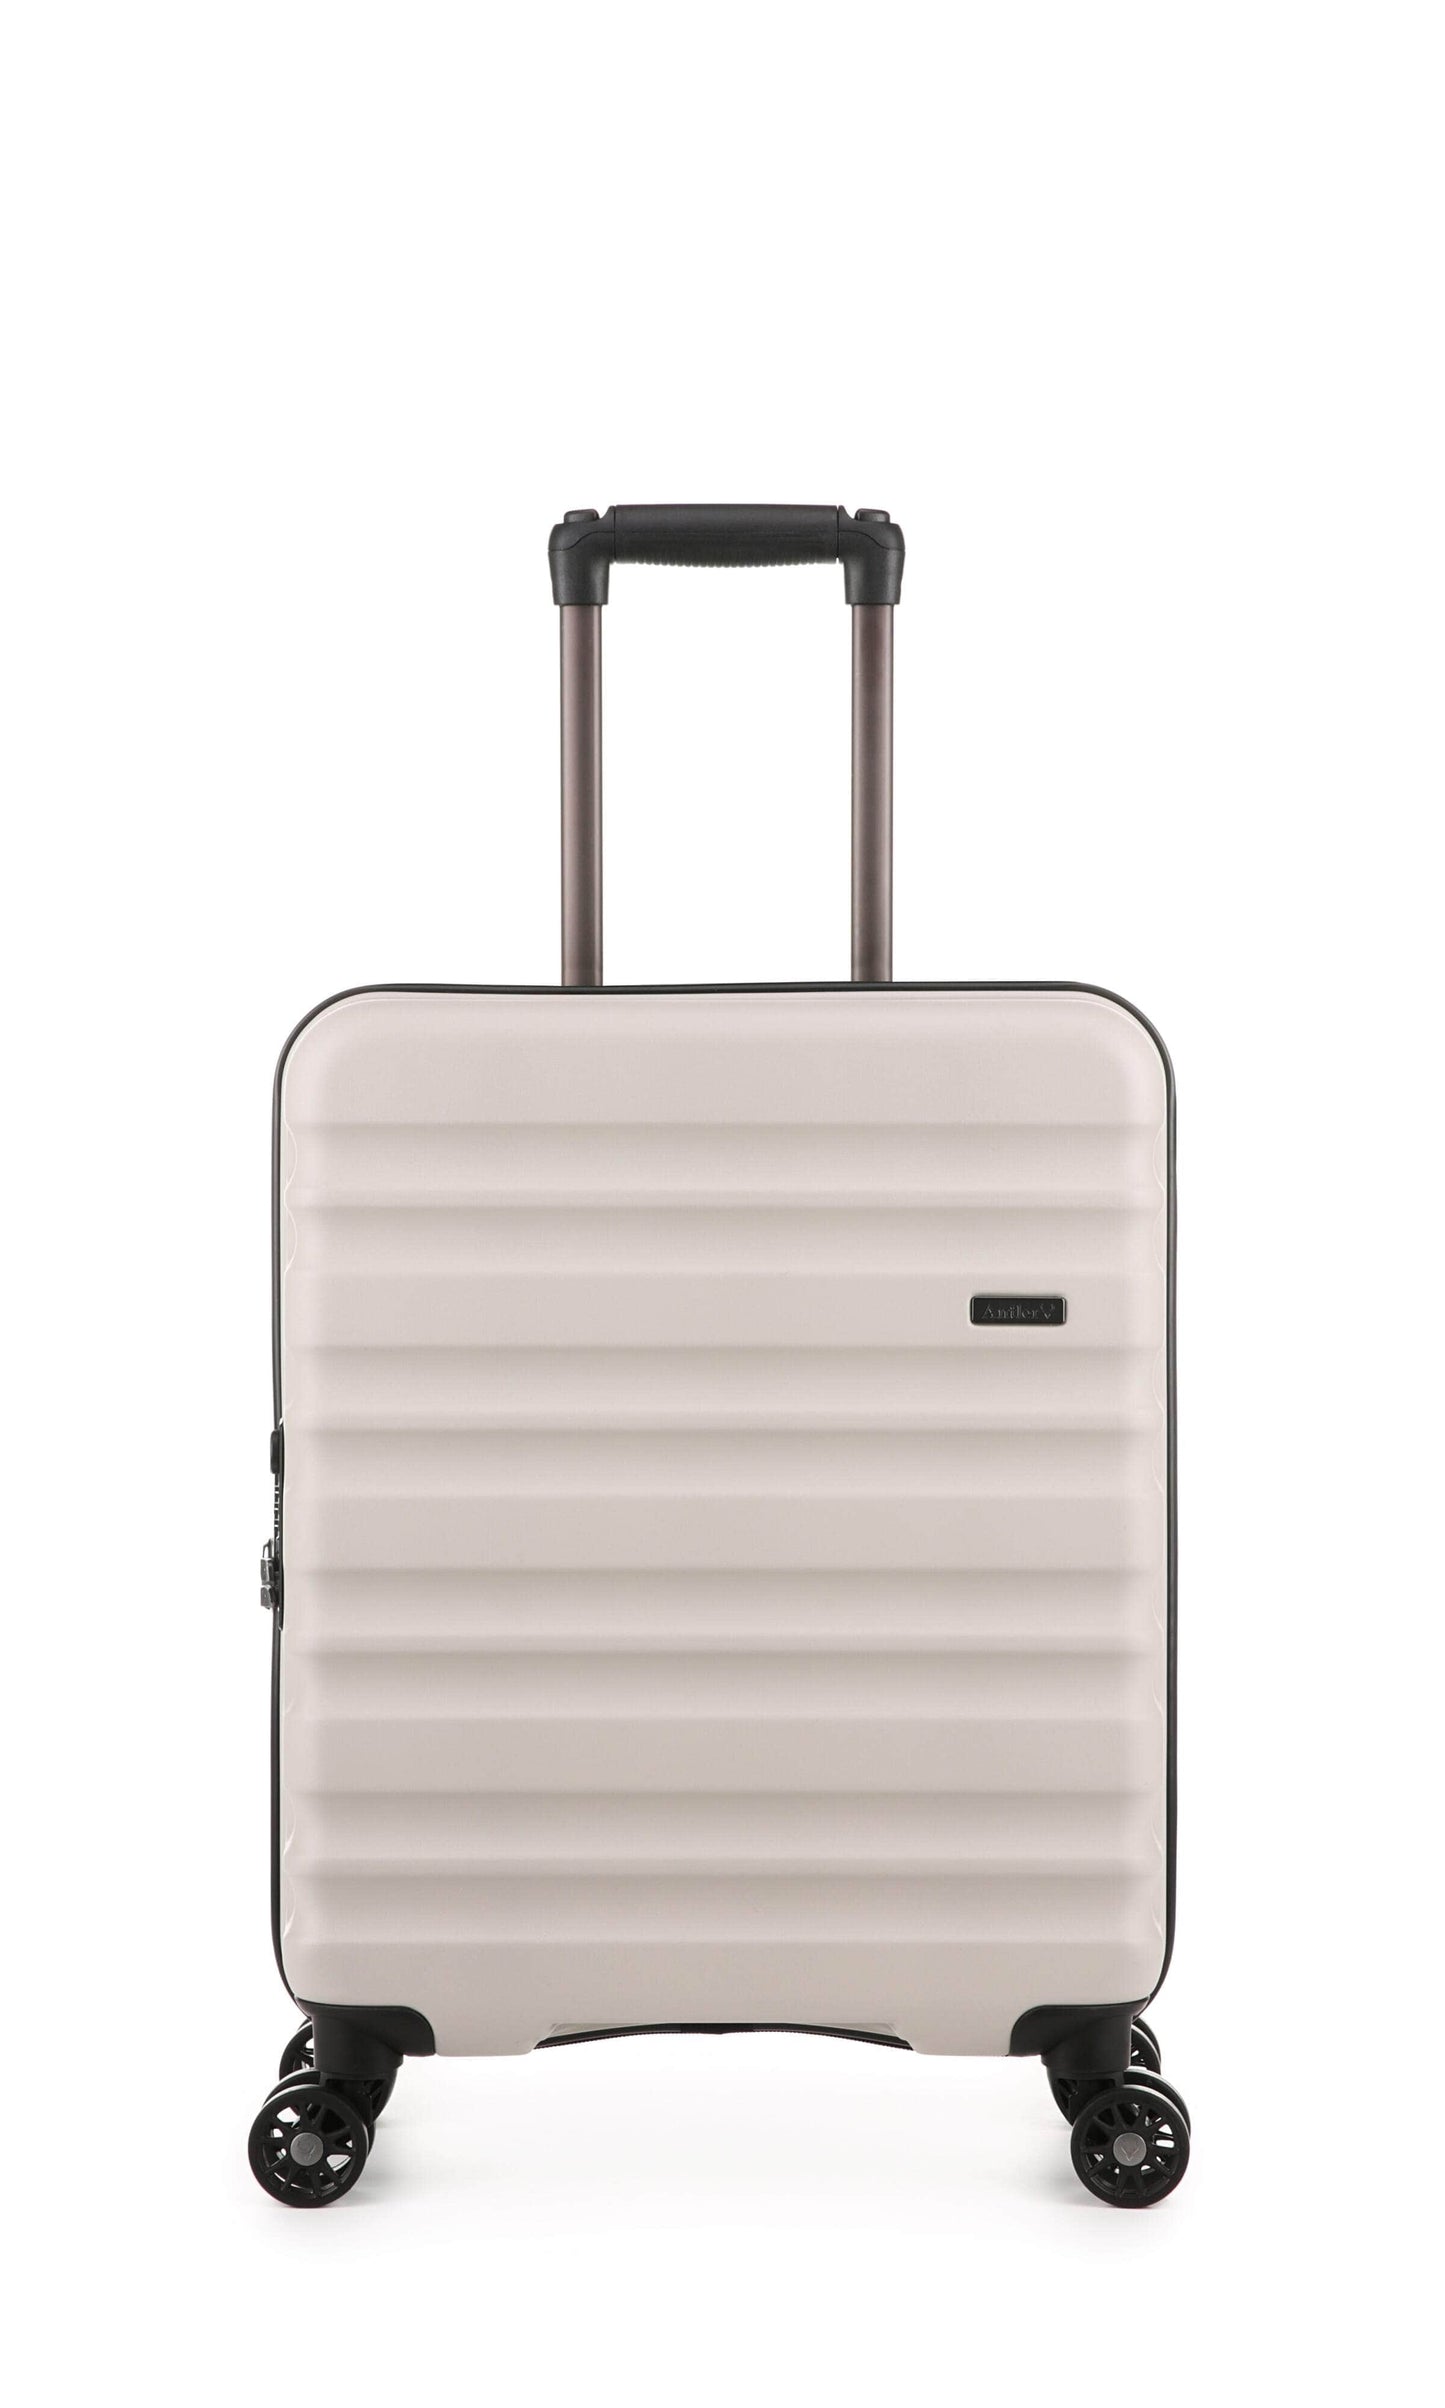 Antler Luggage -  Clifton cabin in taupe - Hard Suitcases Clifton 55x40x20cm Cabin Suitcase Taupe | Hard Suitcase | Antler UK